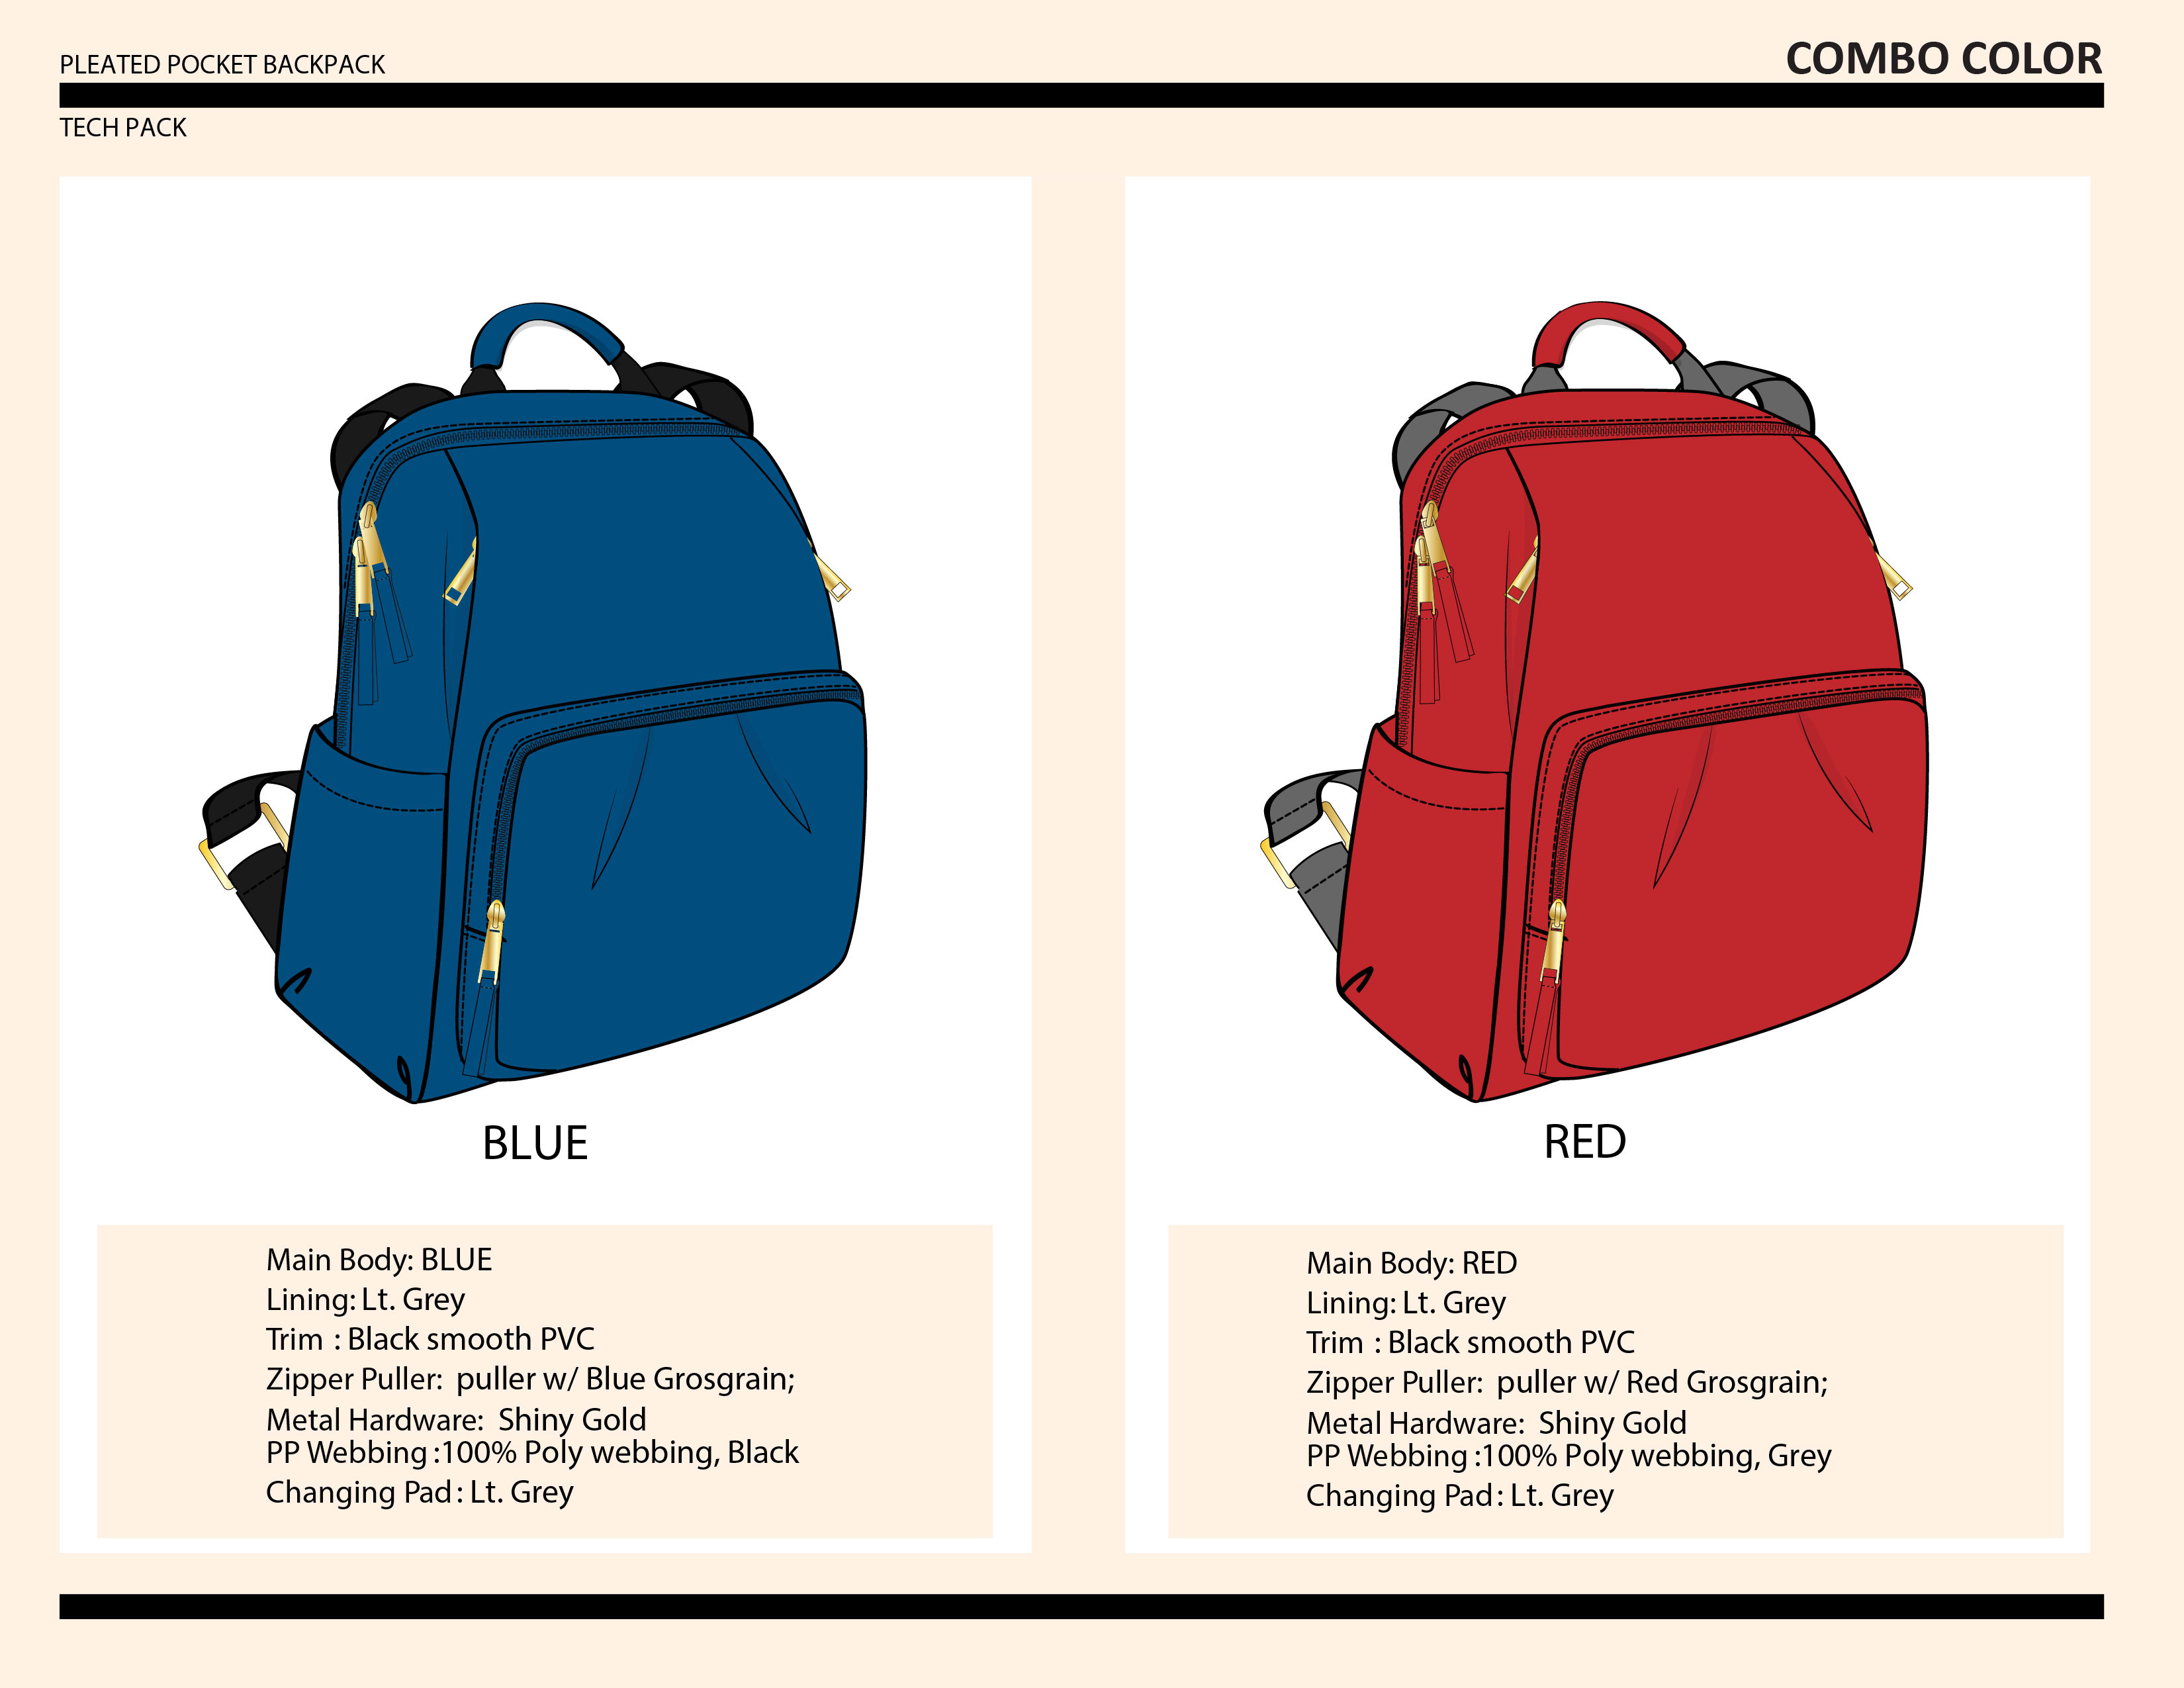 Bag Design illustration with Teck Pack